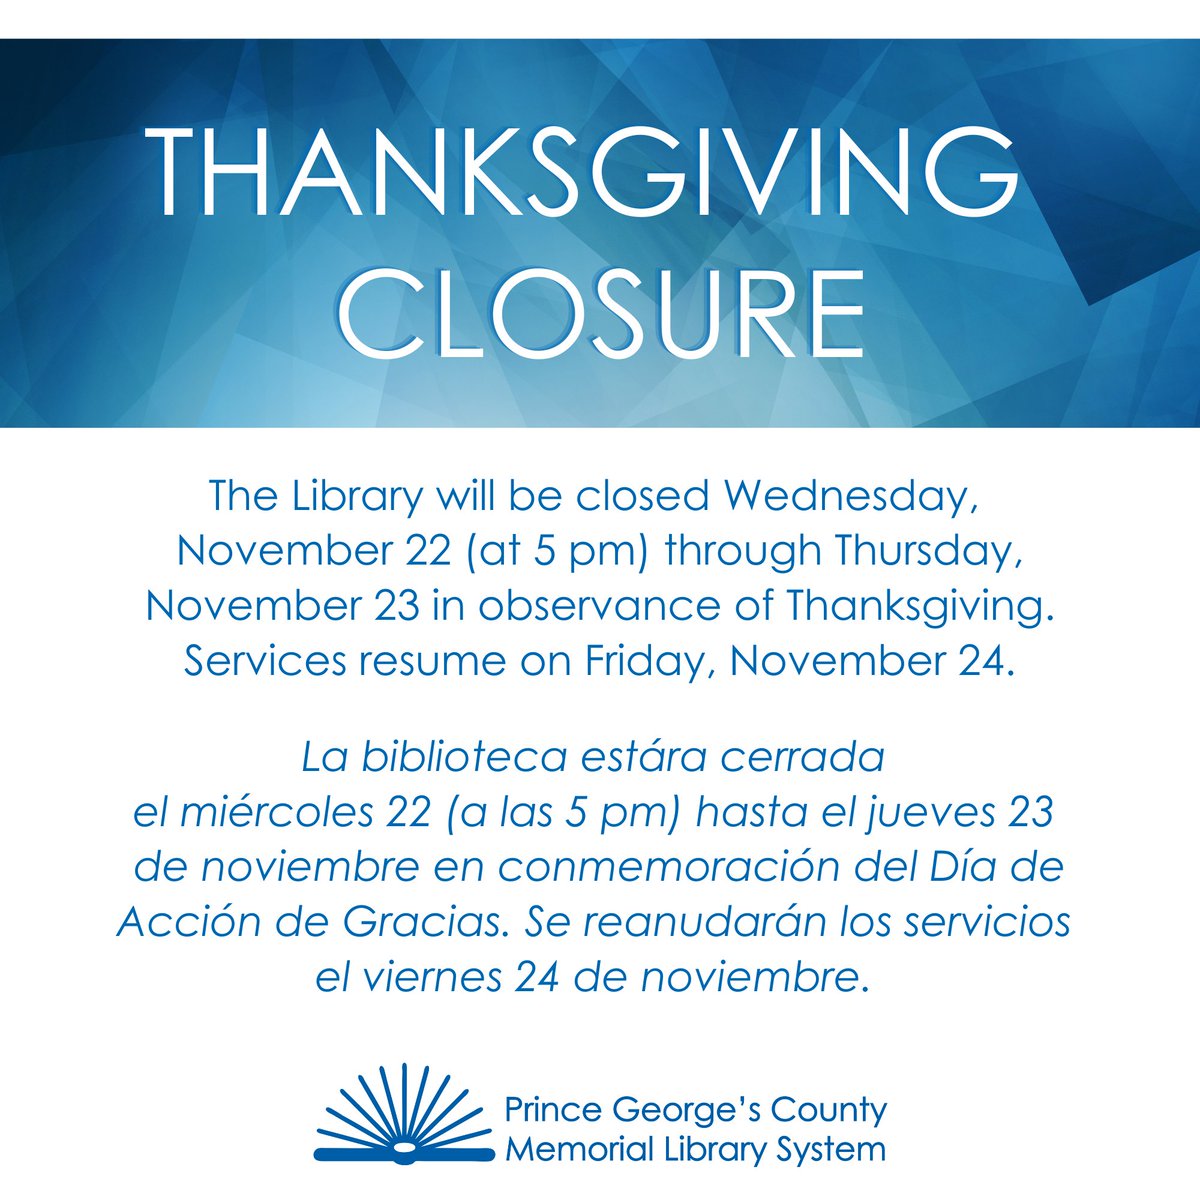 PGCMLS will be closed Wednesday, November 22 (at 5 pm) through Thursday, November 23 in observance of Thanksgiving. // La biblioteca estára cerrada el miércoles 22 (a las 5 pm) hasta el jueves 23 de noviembre en conmemoración del Día de Acción de Gracias.